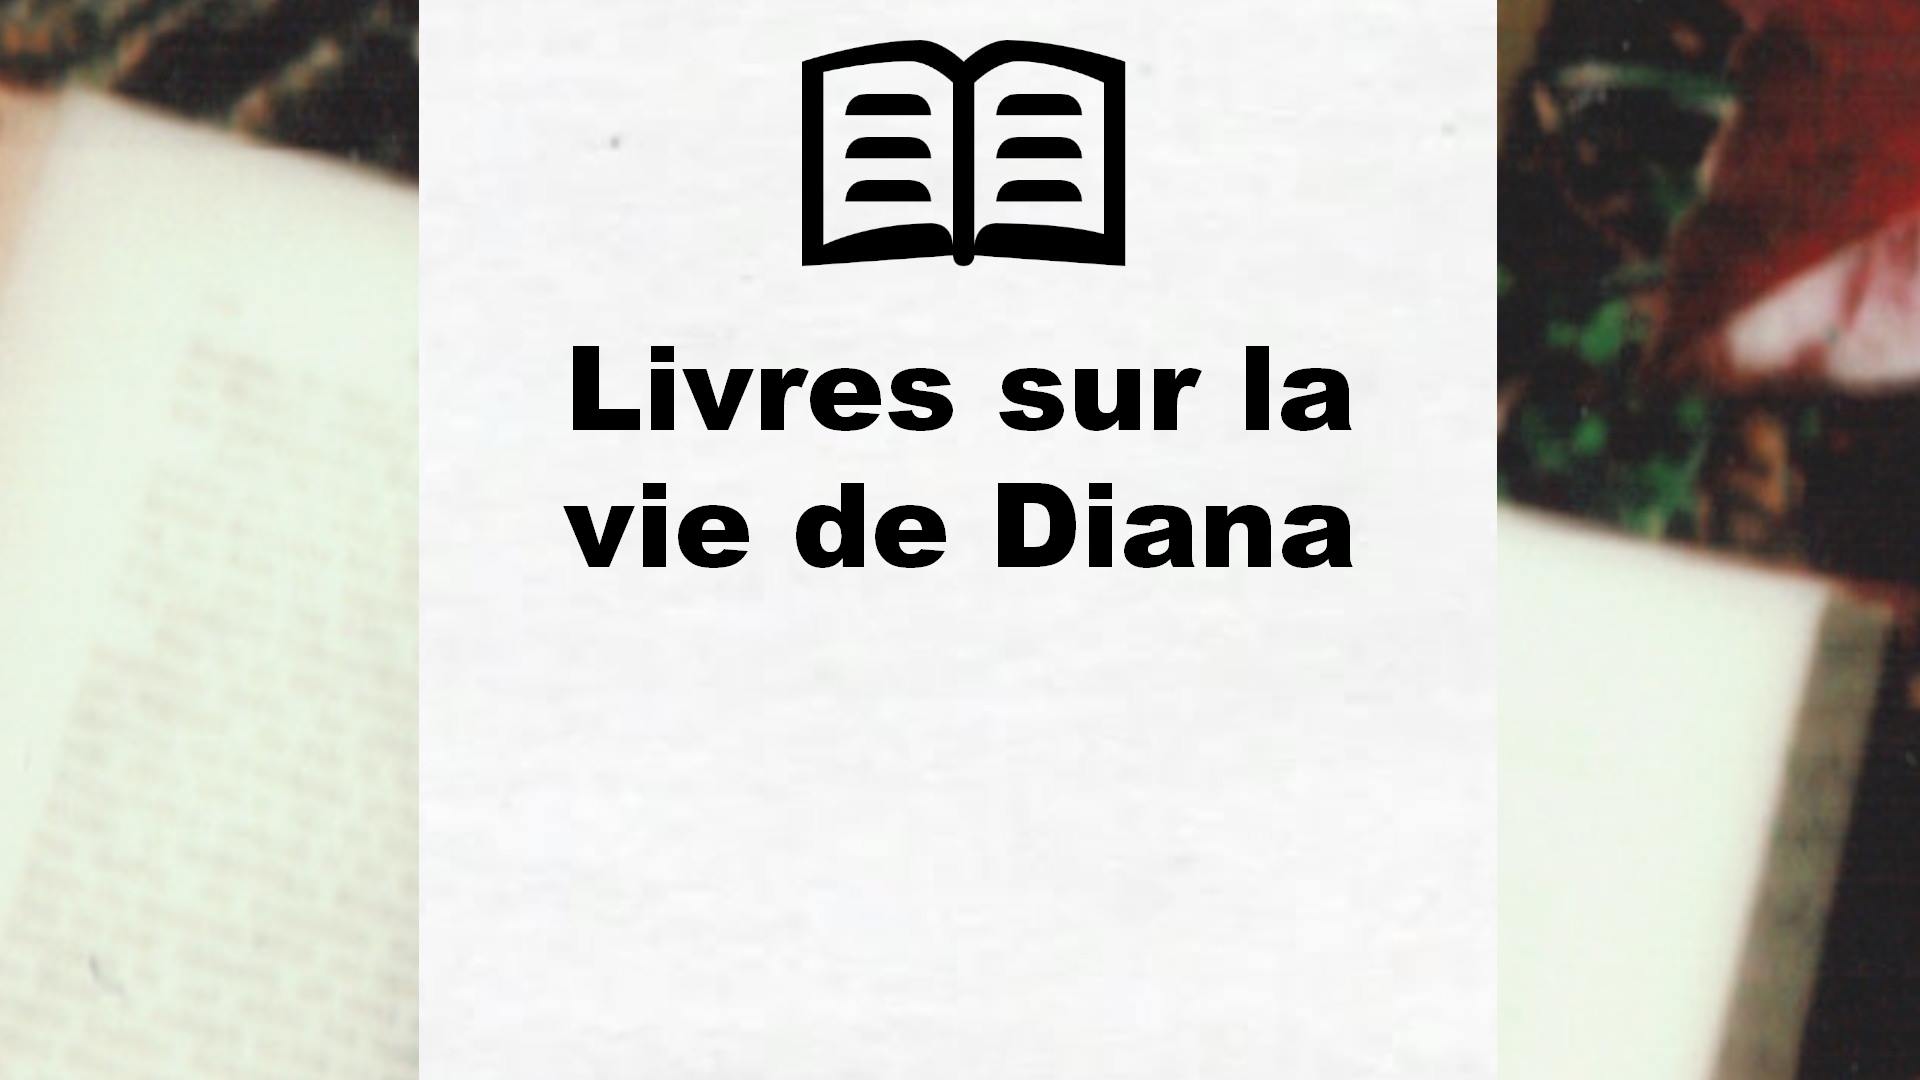 Livres sur la vie de Diana